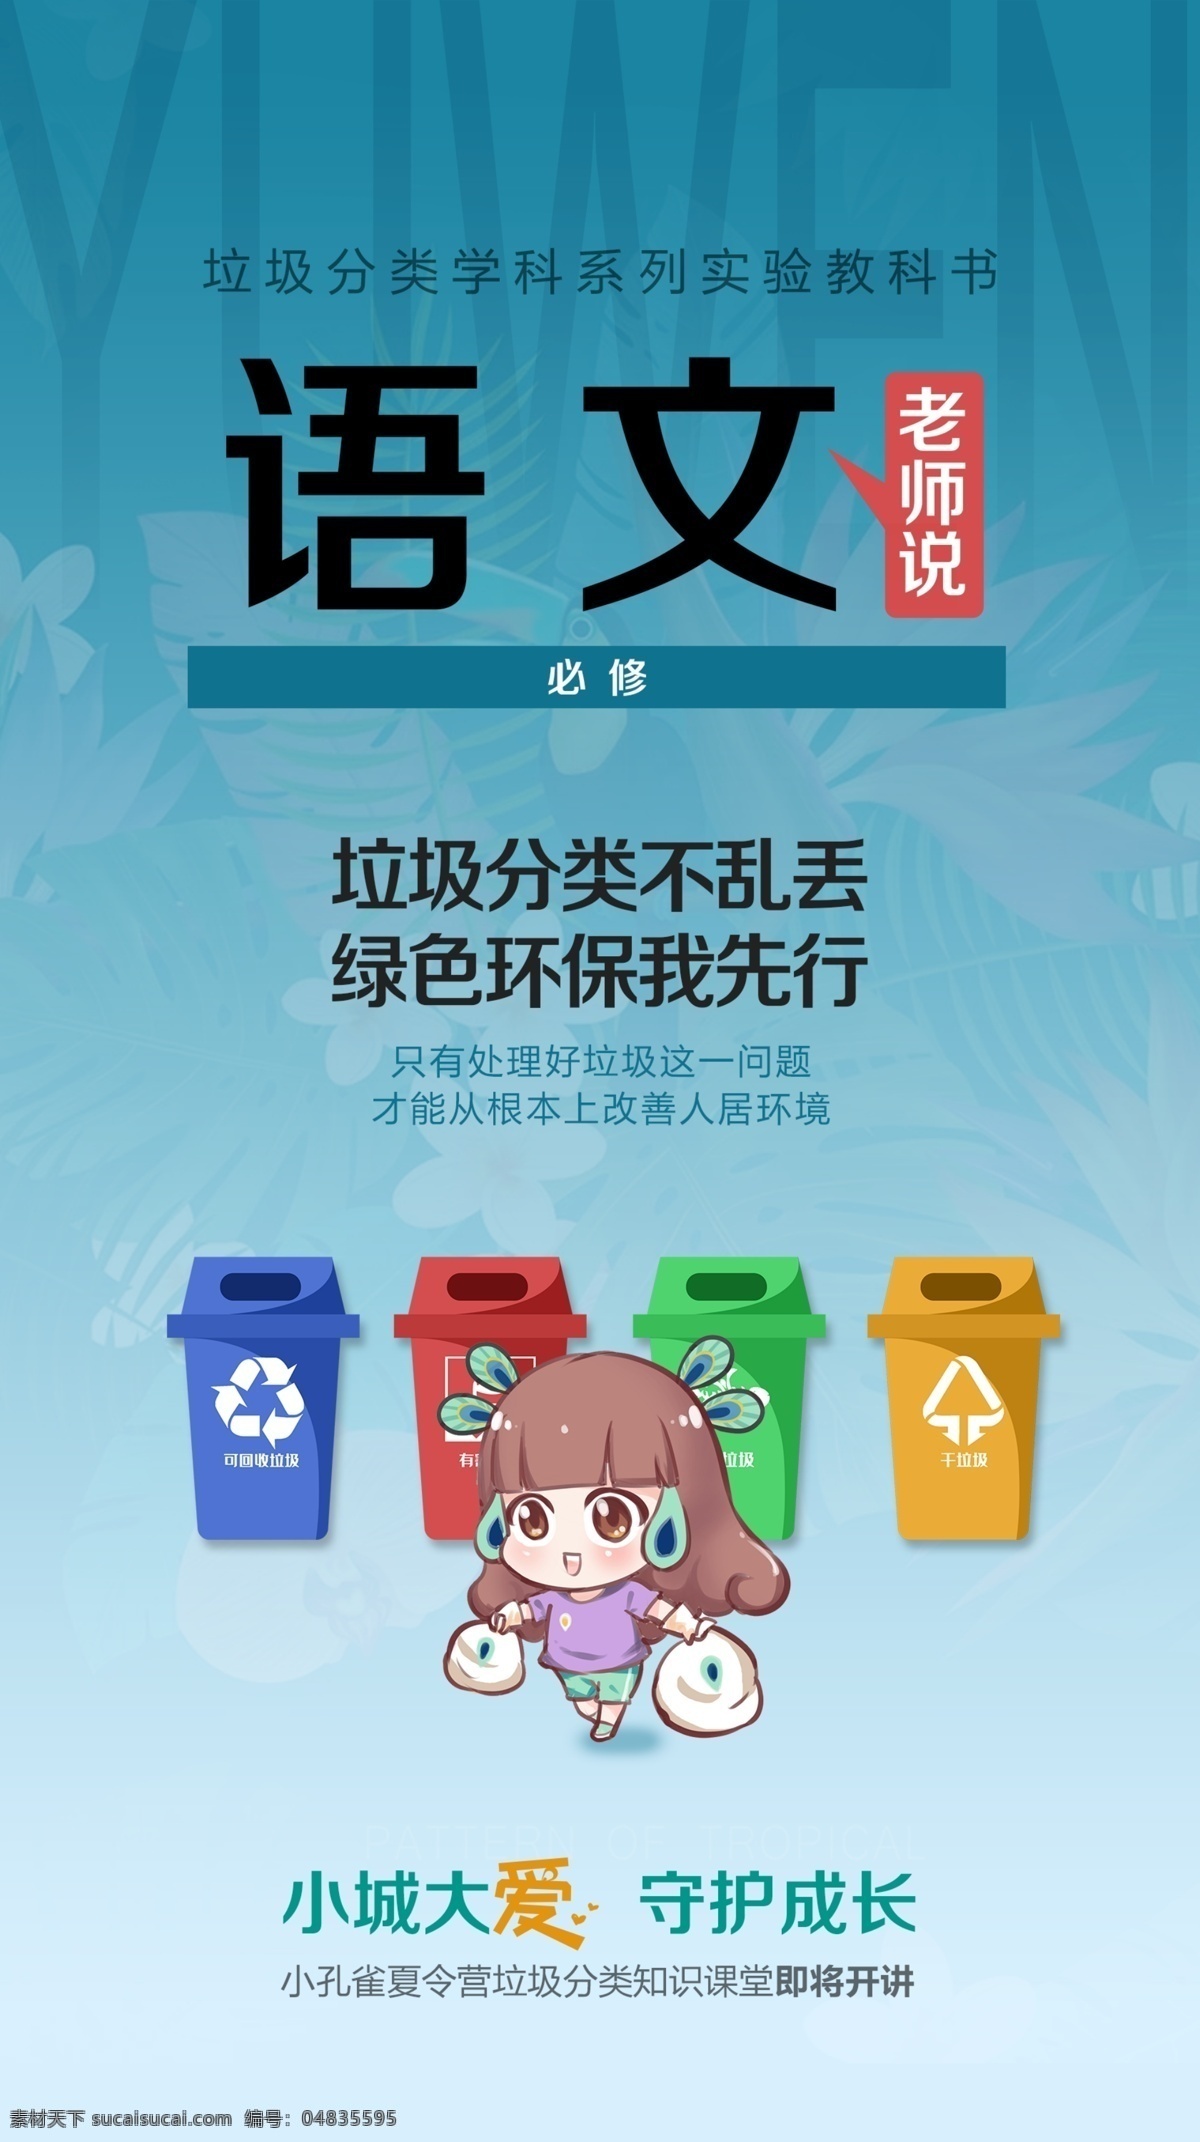 语文 课本 封面 海报 蓝色 垃圾分类 不能乱 绿色 环保 我先行 小孔雀 卡通形象 垃圾桶